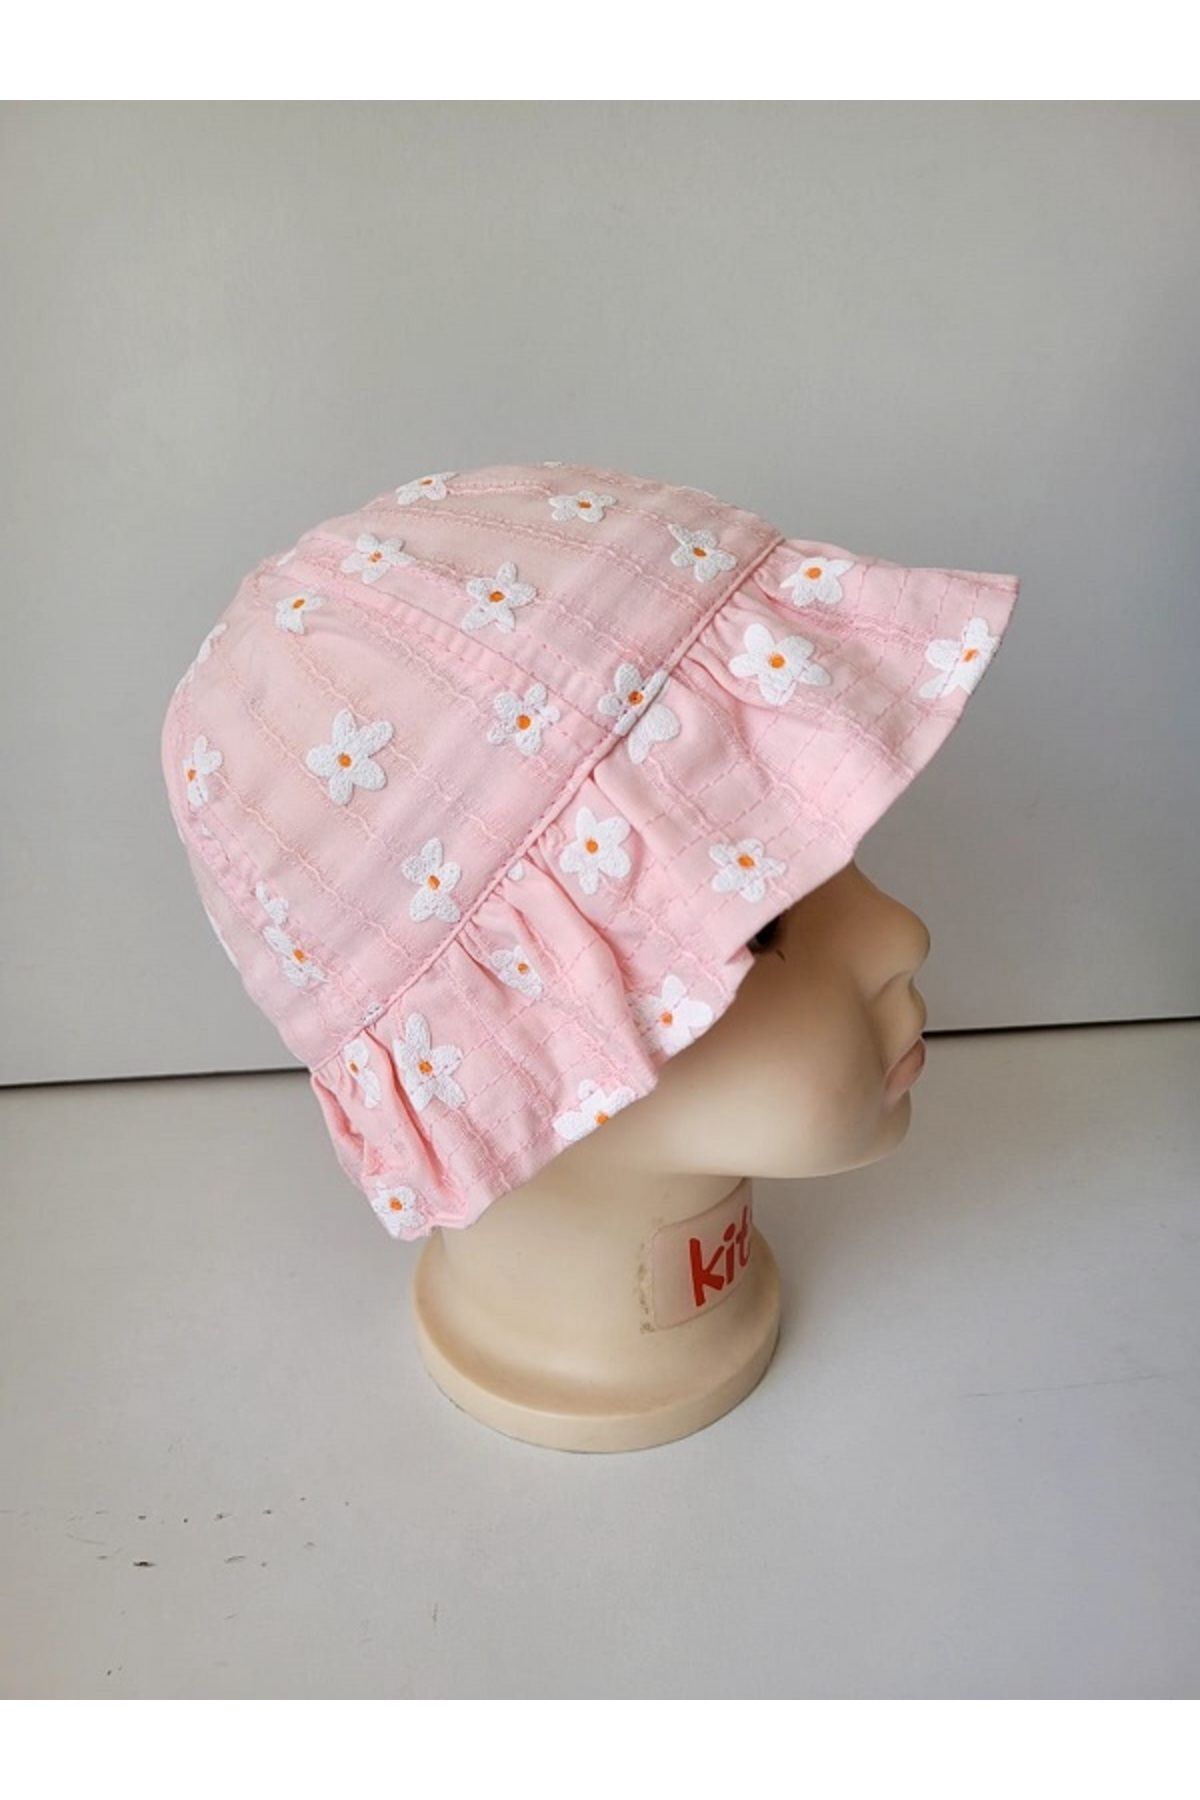 Aware Time Kitti 0-12 Ay  Kız  Bebek&çocuk Yazlık Fötr Şapka